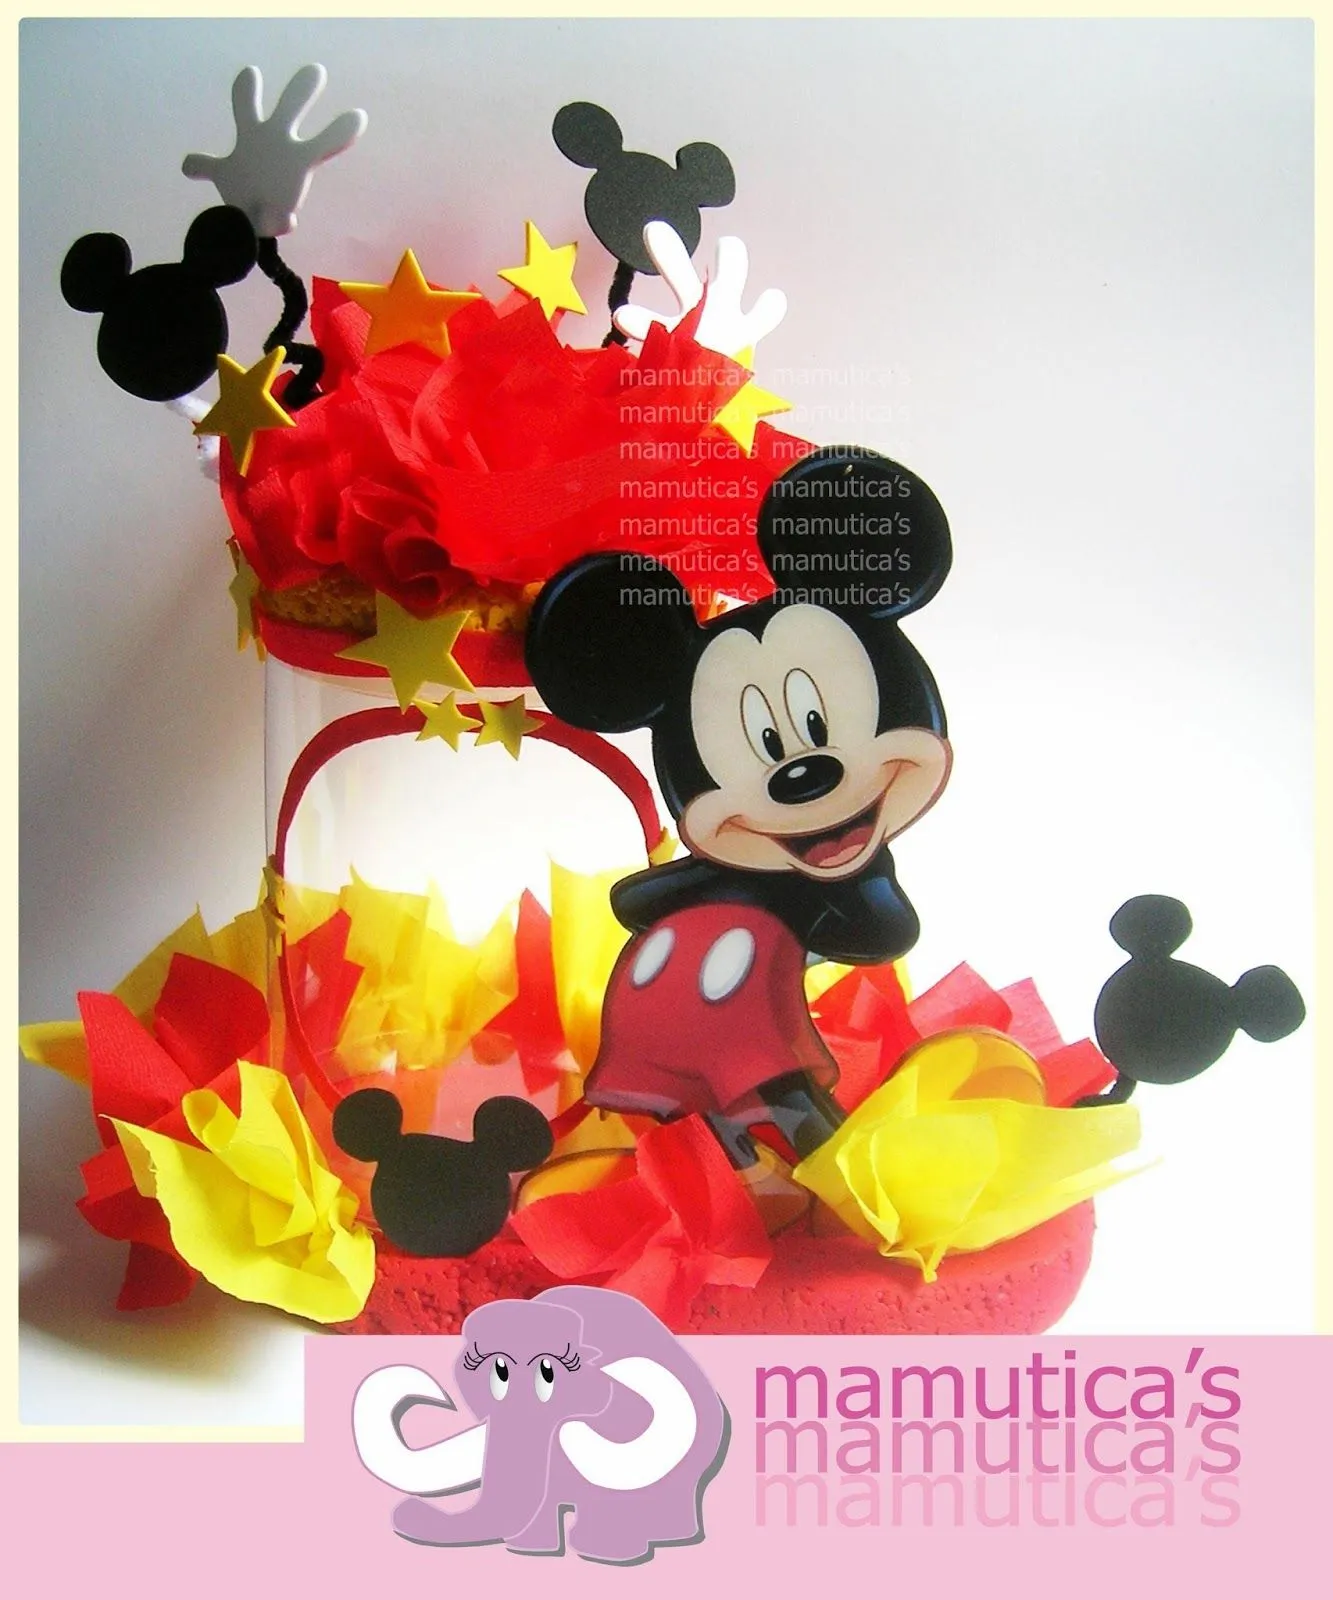 Mamutica's: Dispensadores de chucherías .... Mickey Mouse